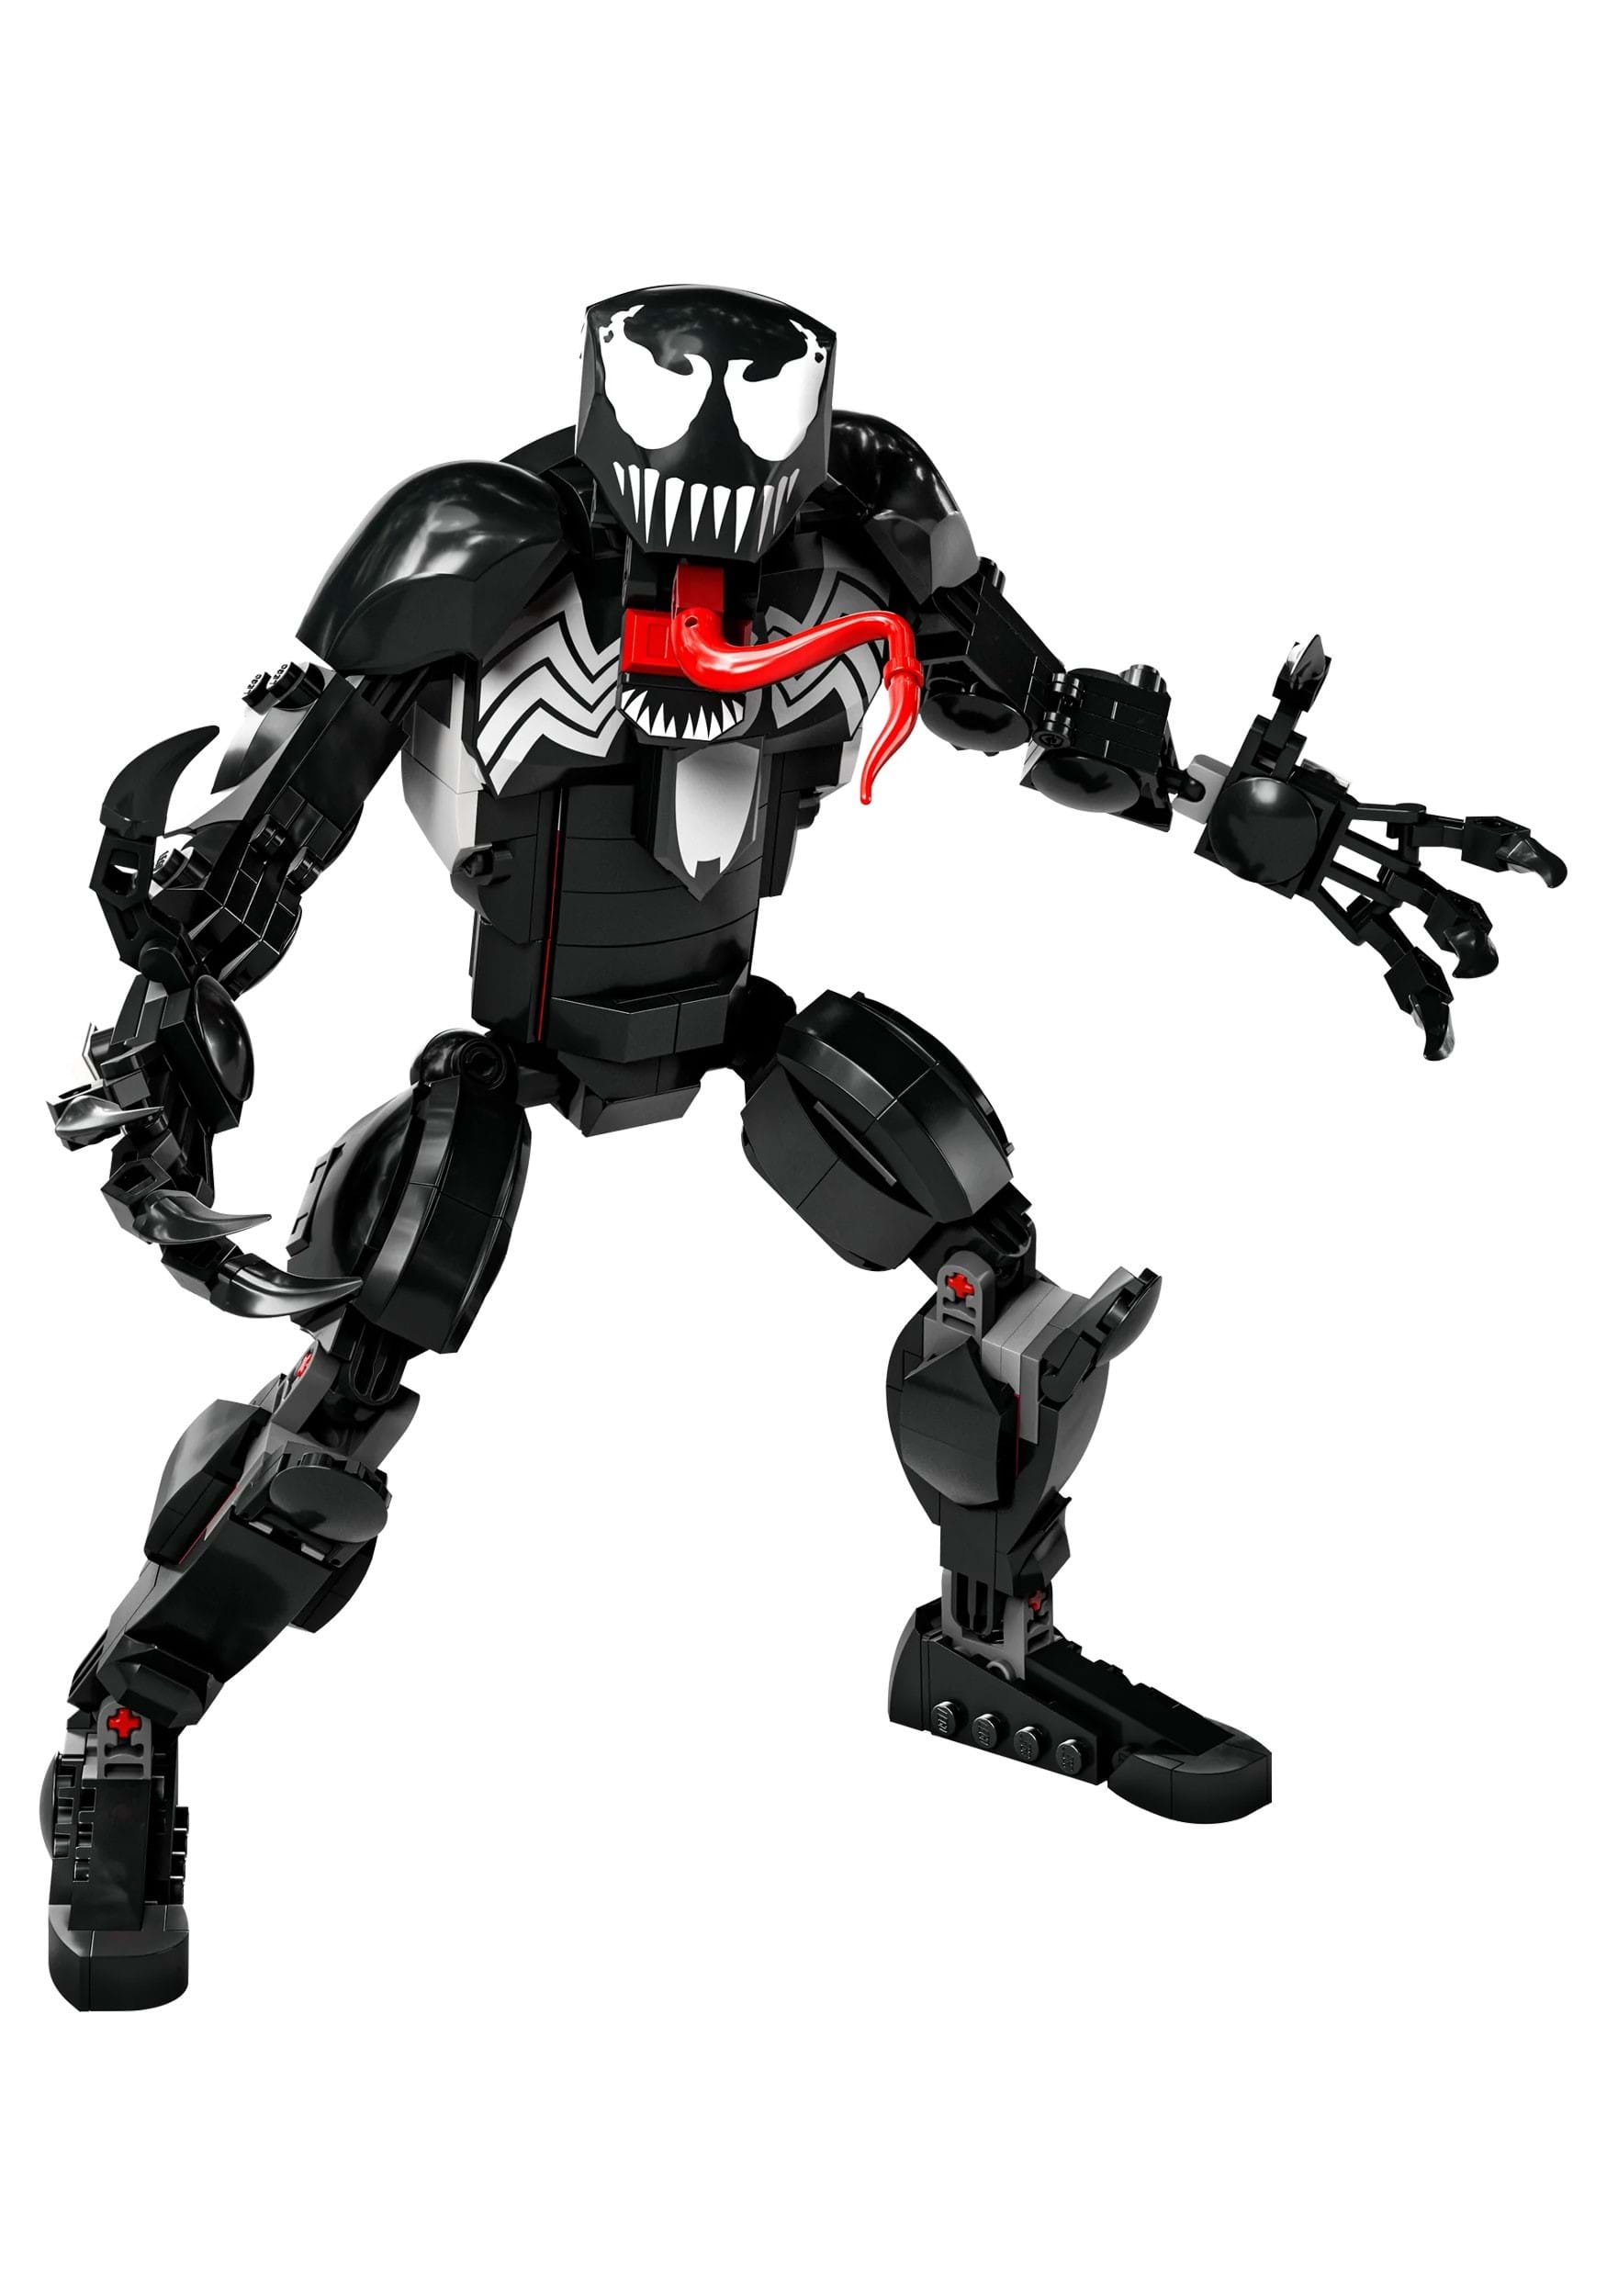 LEGO Venom Action Figure